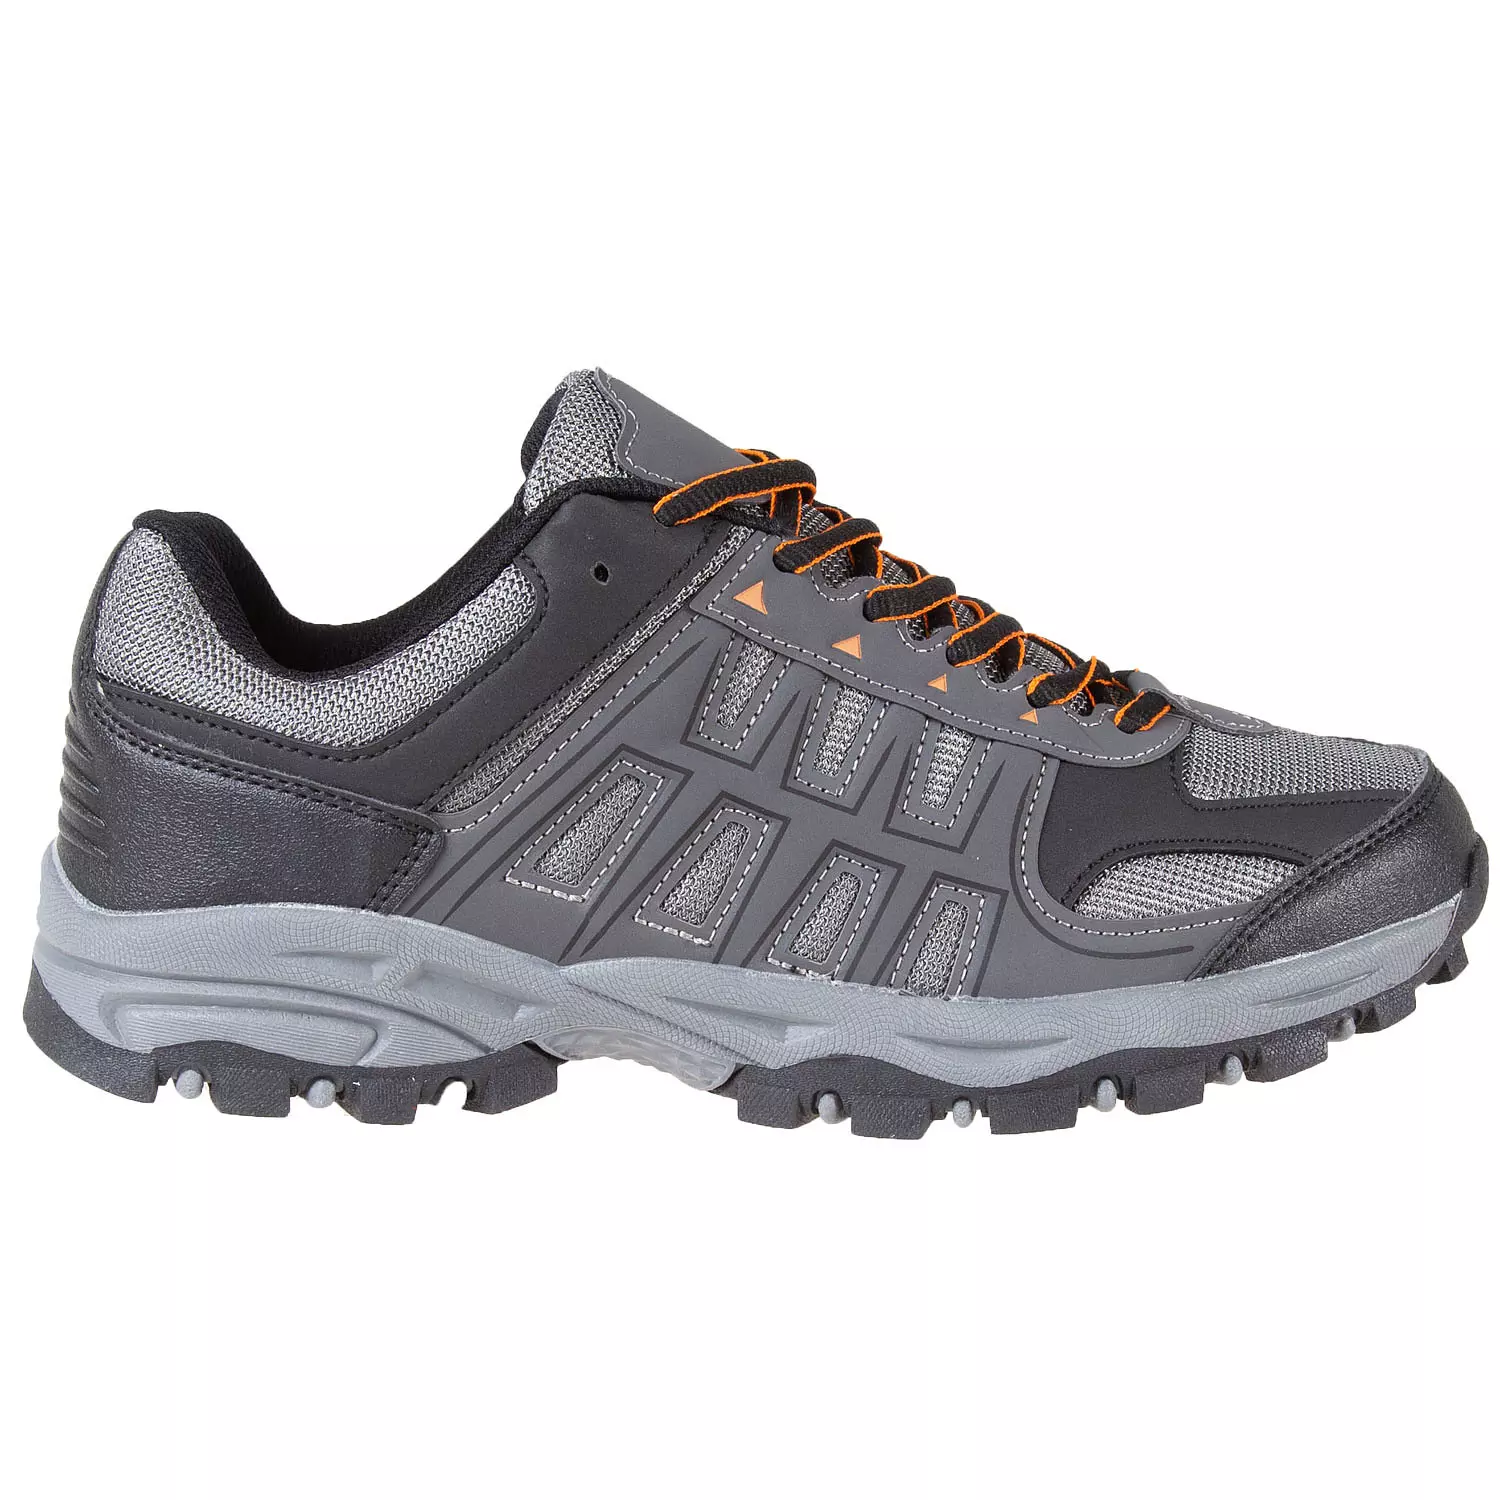 Chaussures de randonnée basses à lacets pour hommes, taille 11